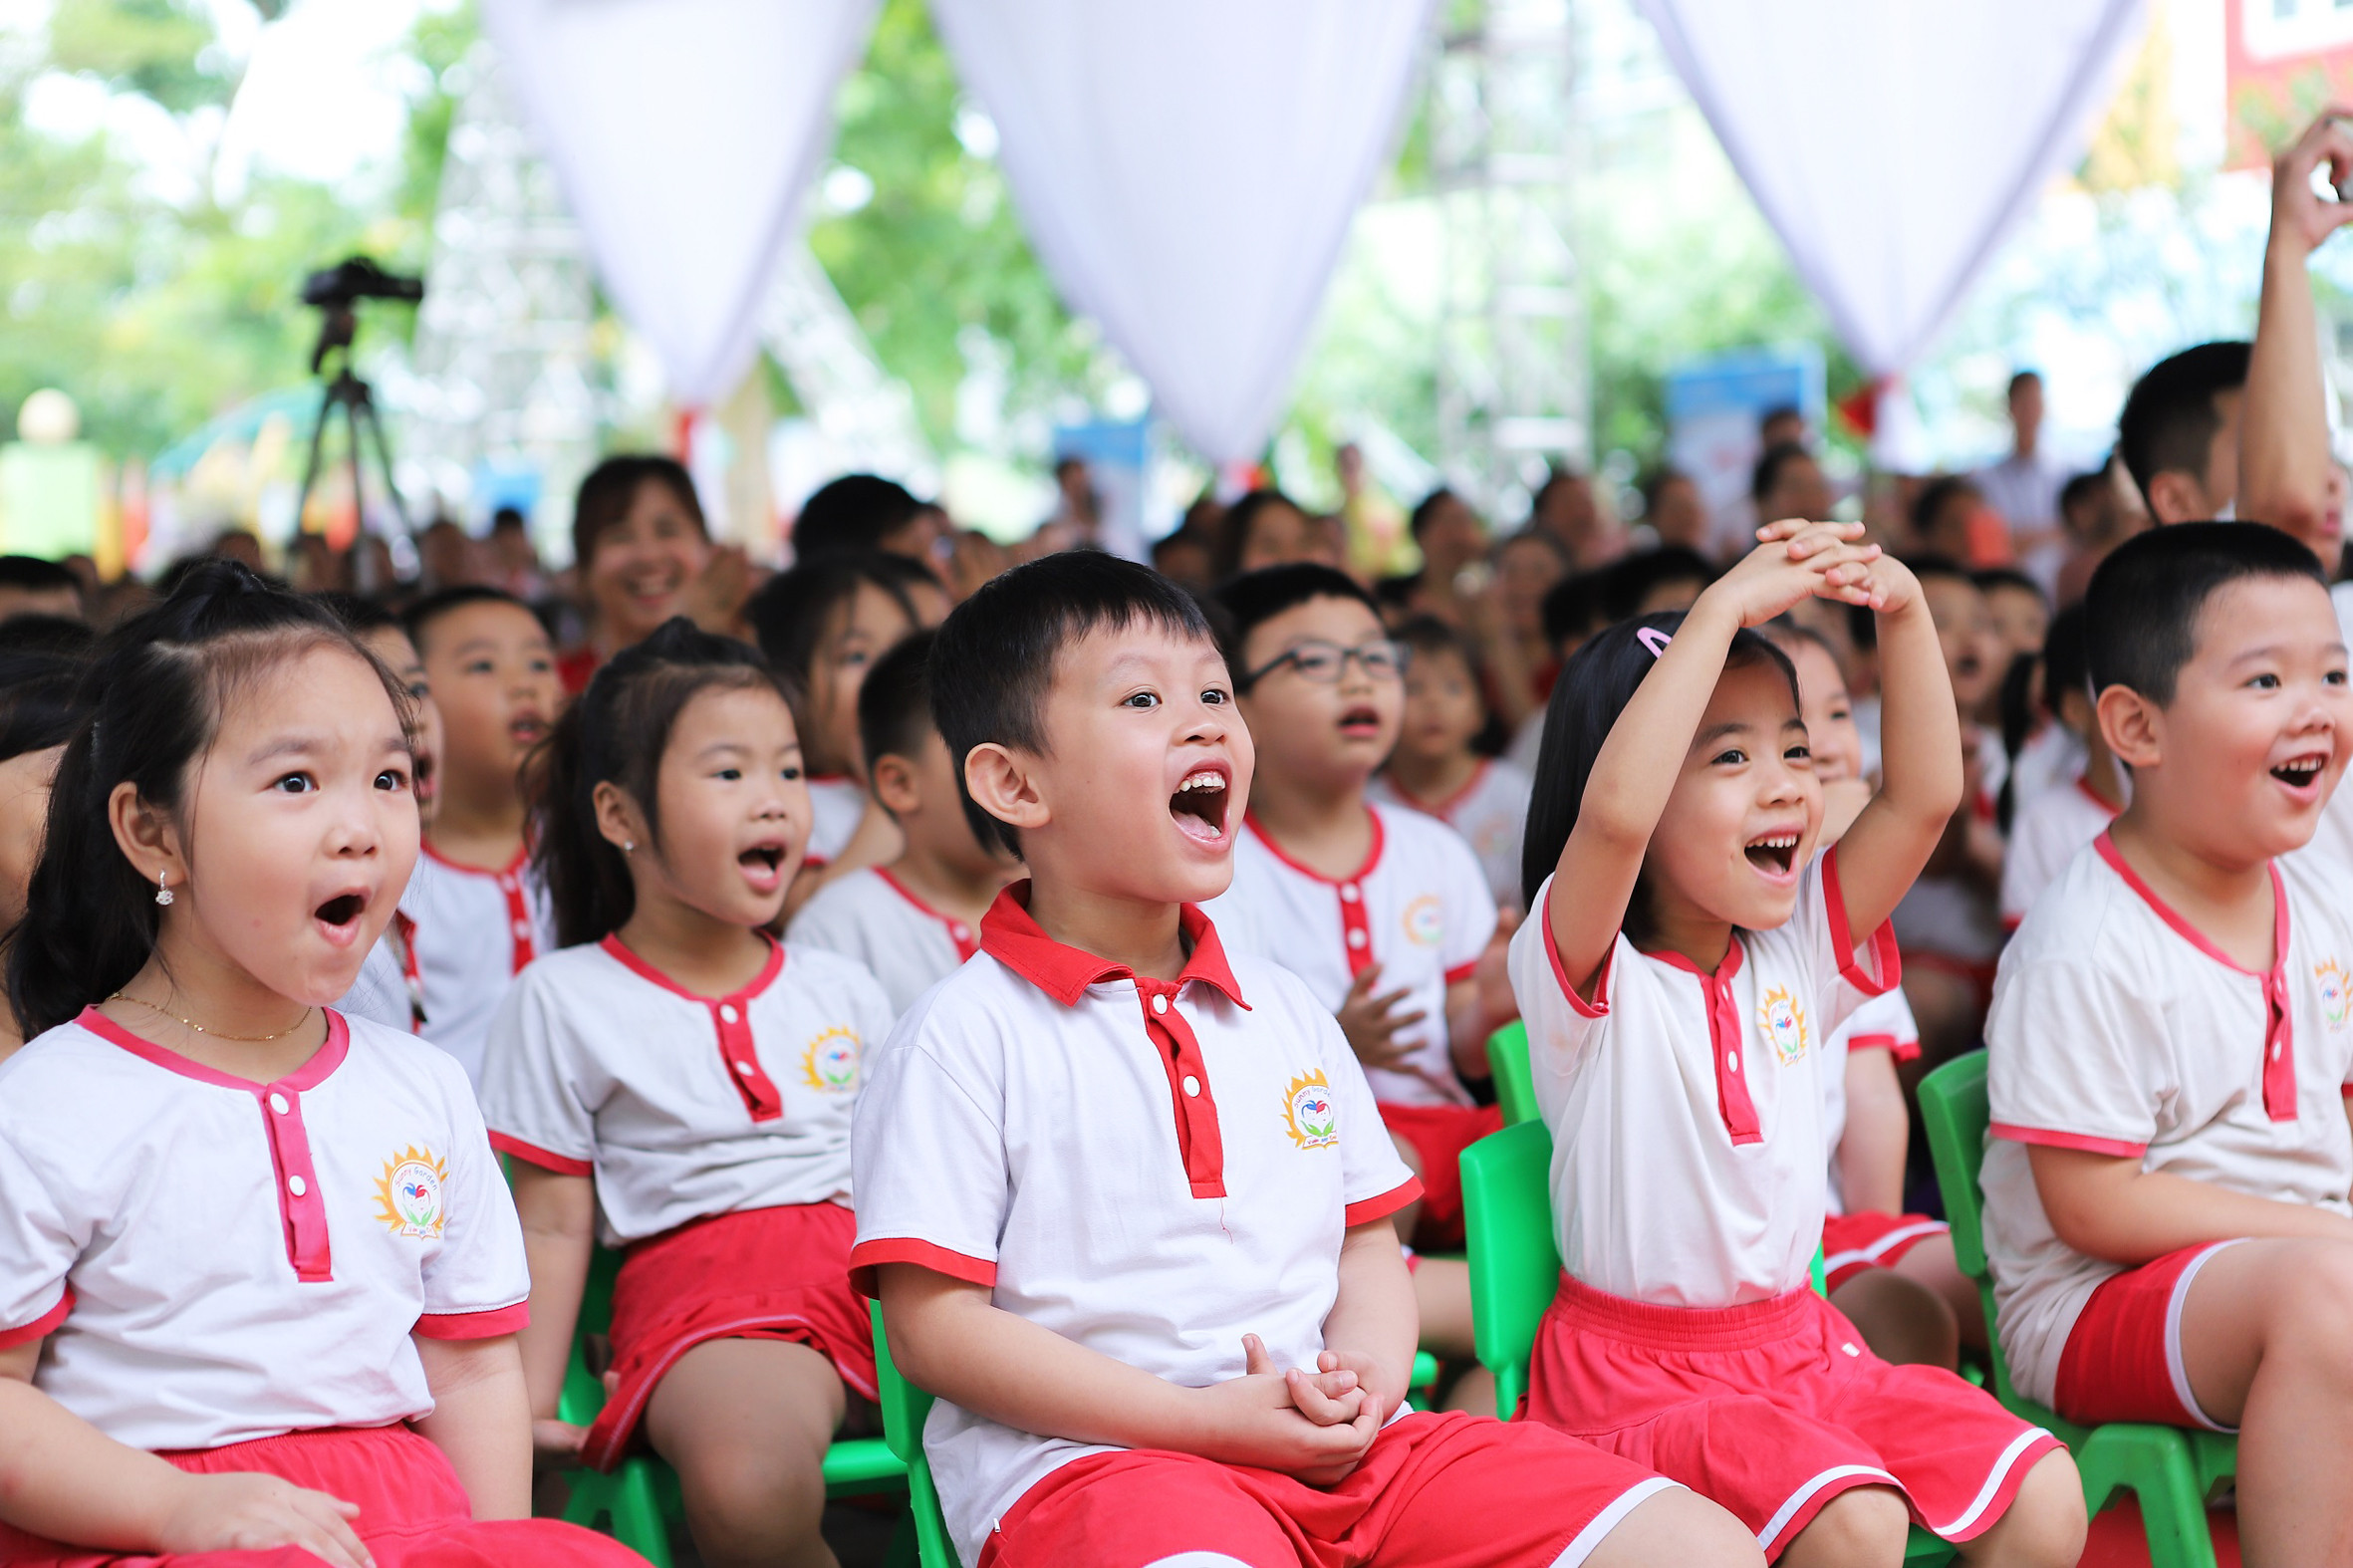 Tại Việt Nam, có 17 tỉnh/thành triển khai chương trình Sữa học đường và đạt được những kết quả bước đầu trong cải thiện tình trạng thể chất của các em học sinh.